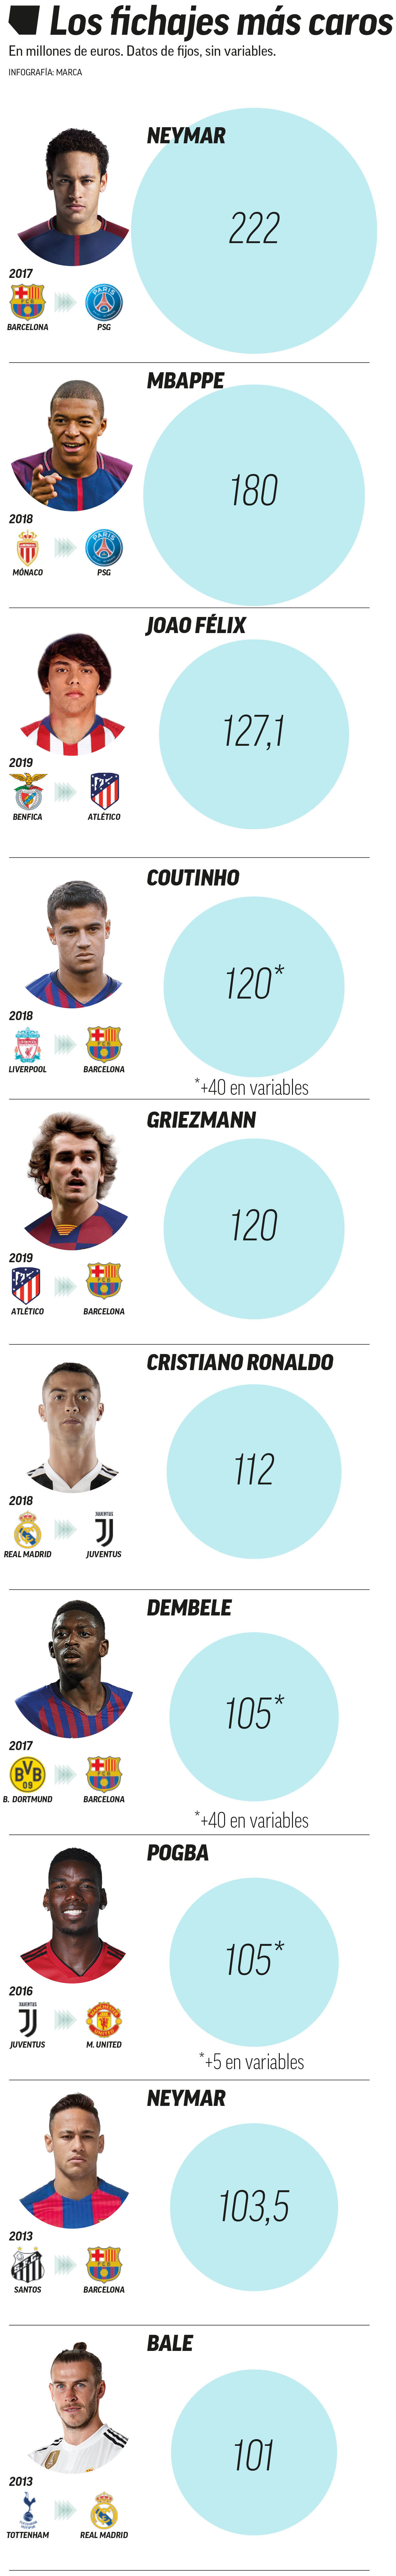 ¿Quién es el jugador más caro del Barcelona